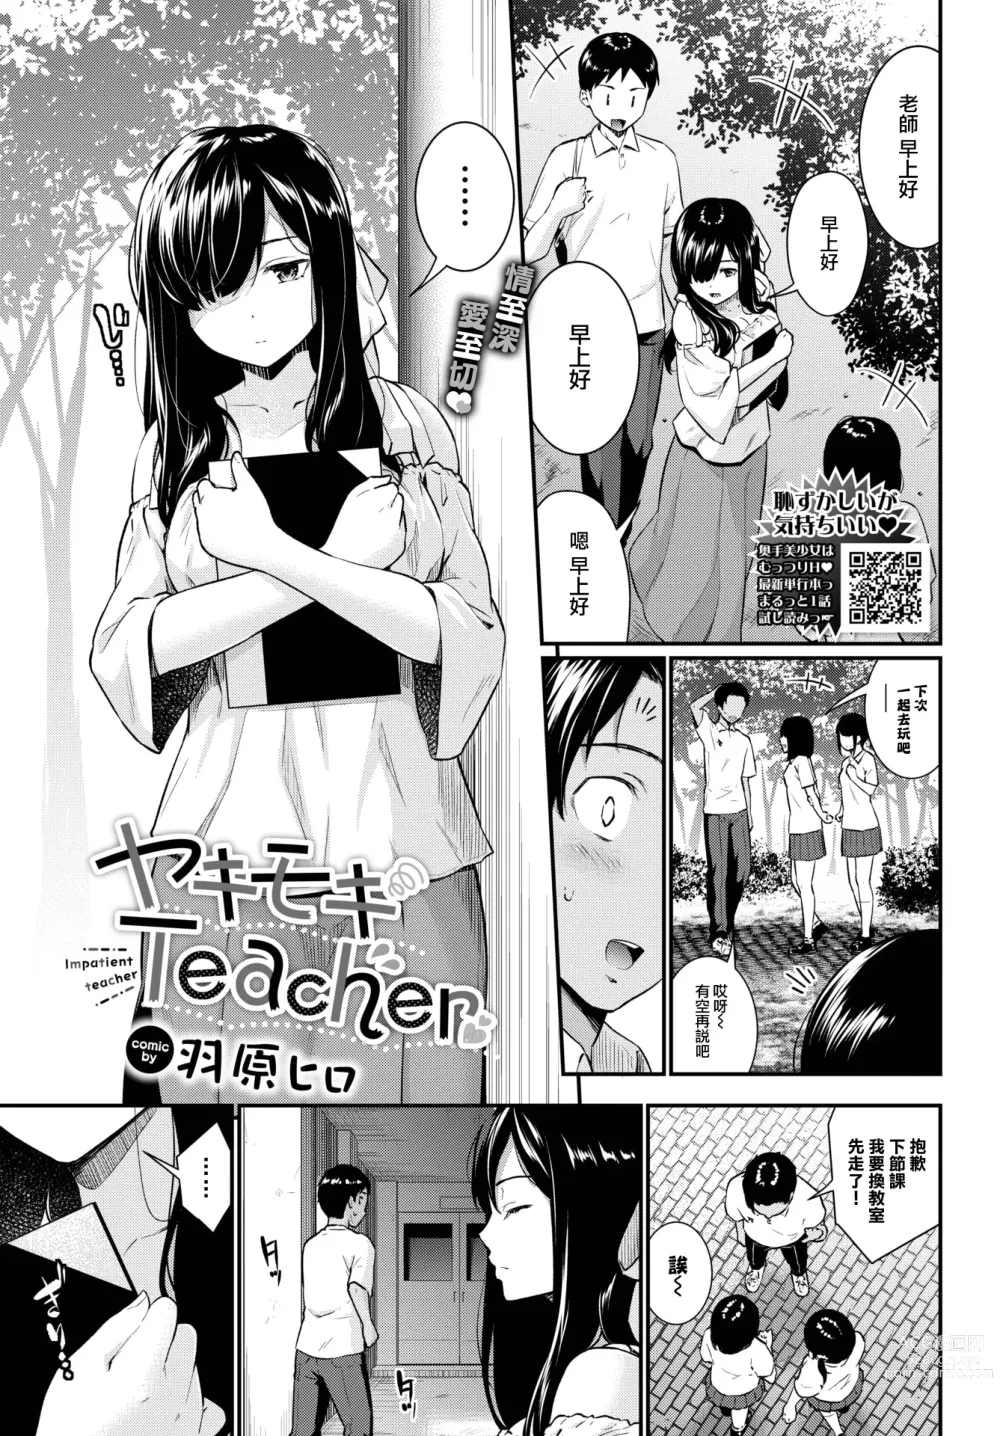 Page 2 of manga Yakimoki Teacher - Impatient teacher